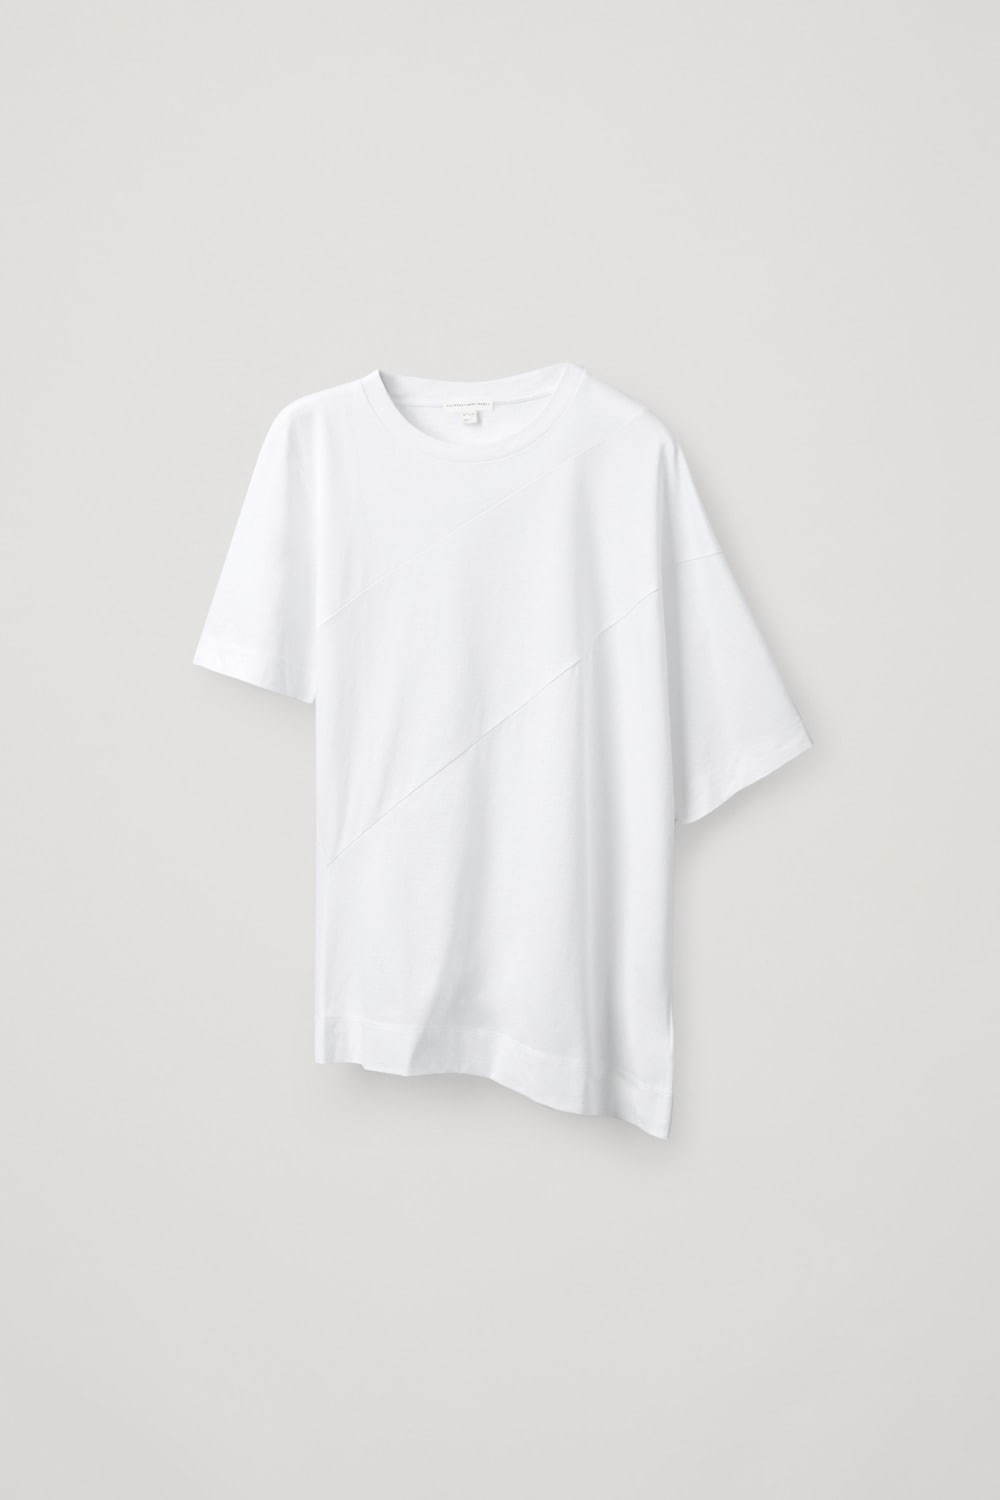 ツイステッド オーガニックコットン Tシャツ 5,900円(税込)